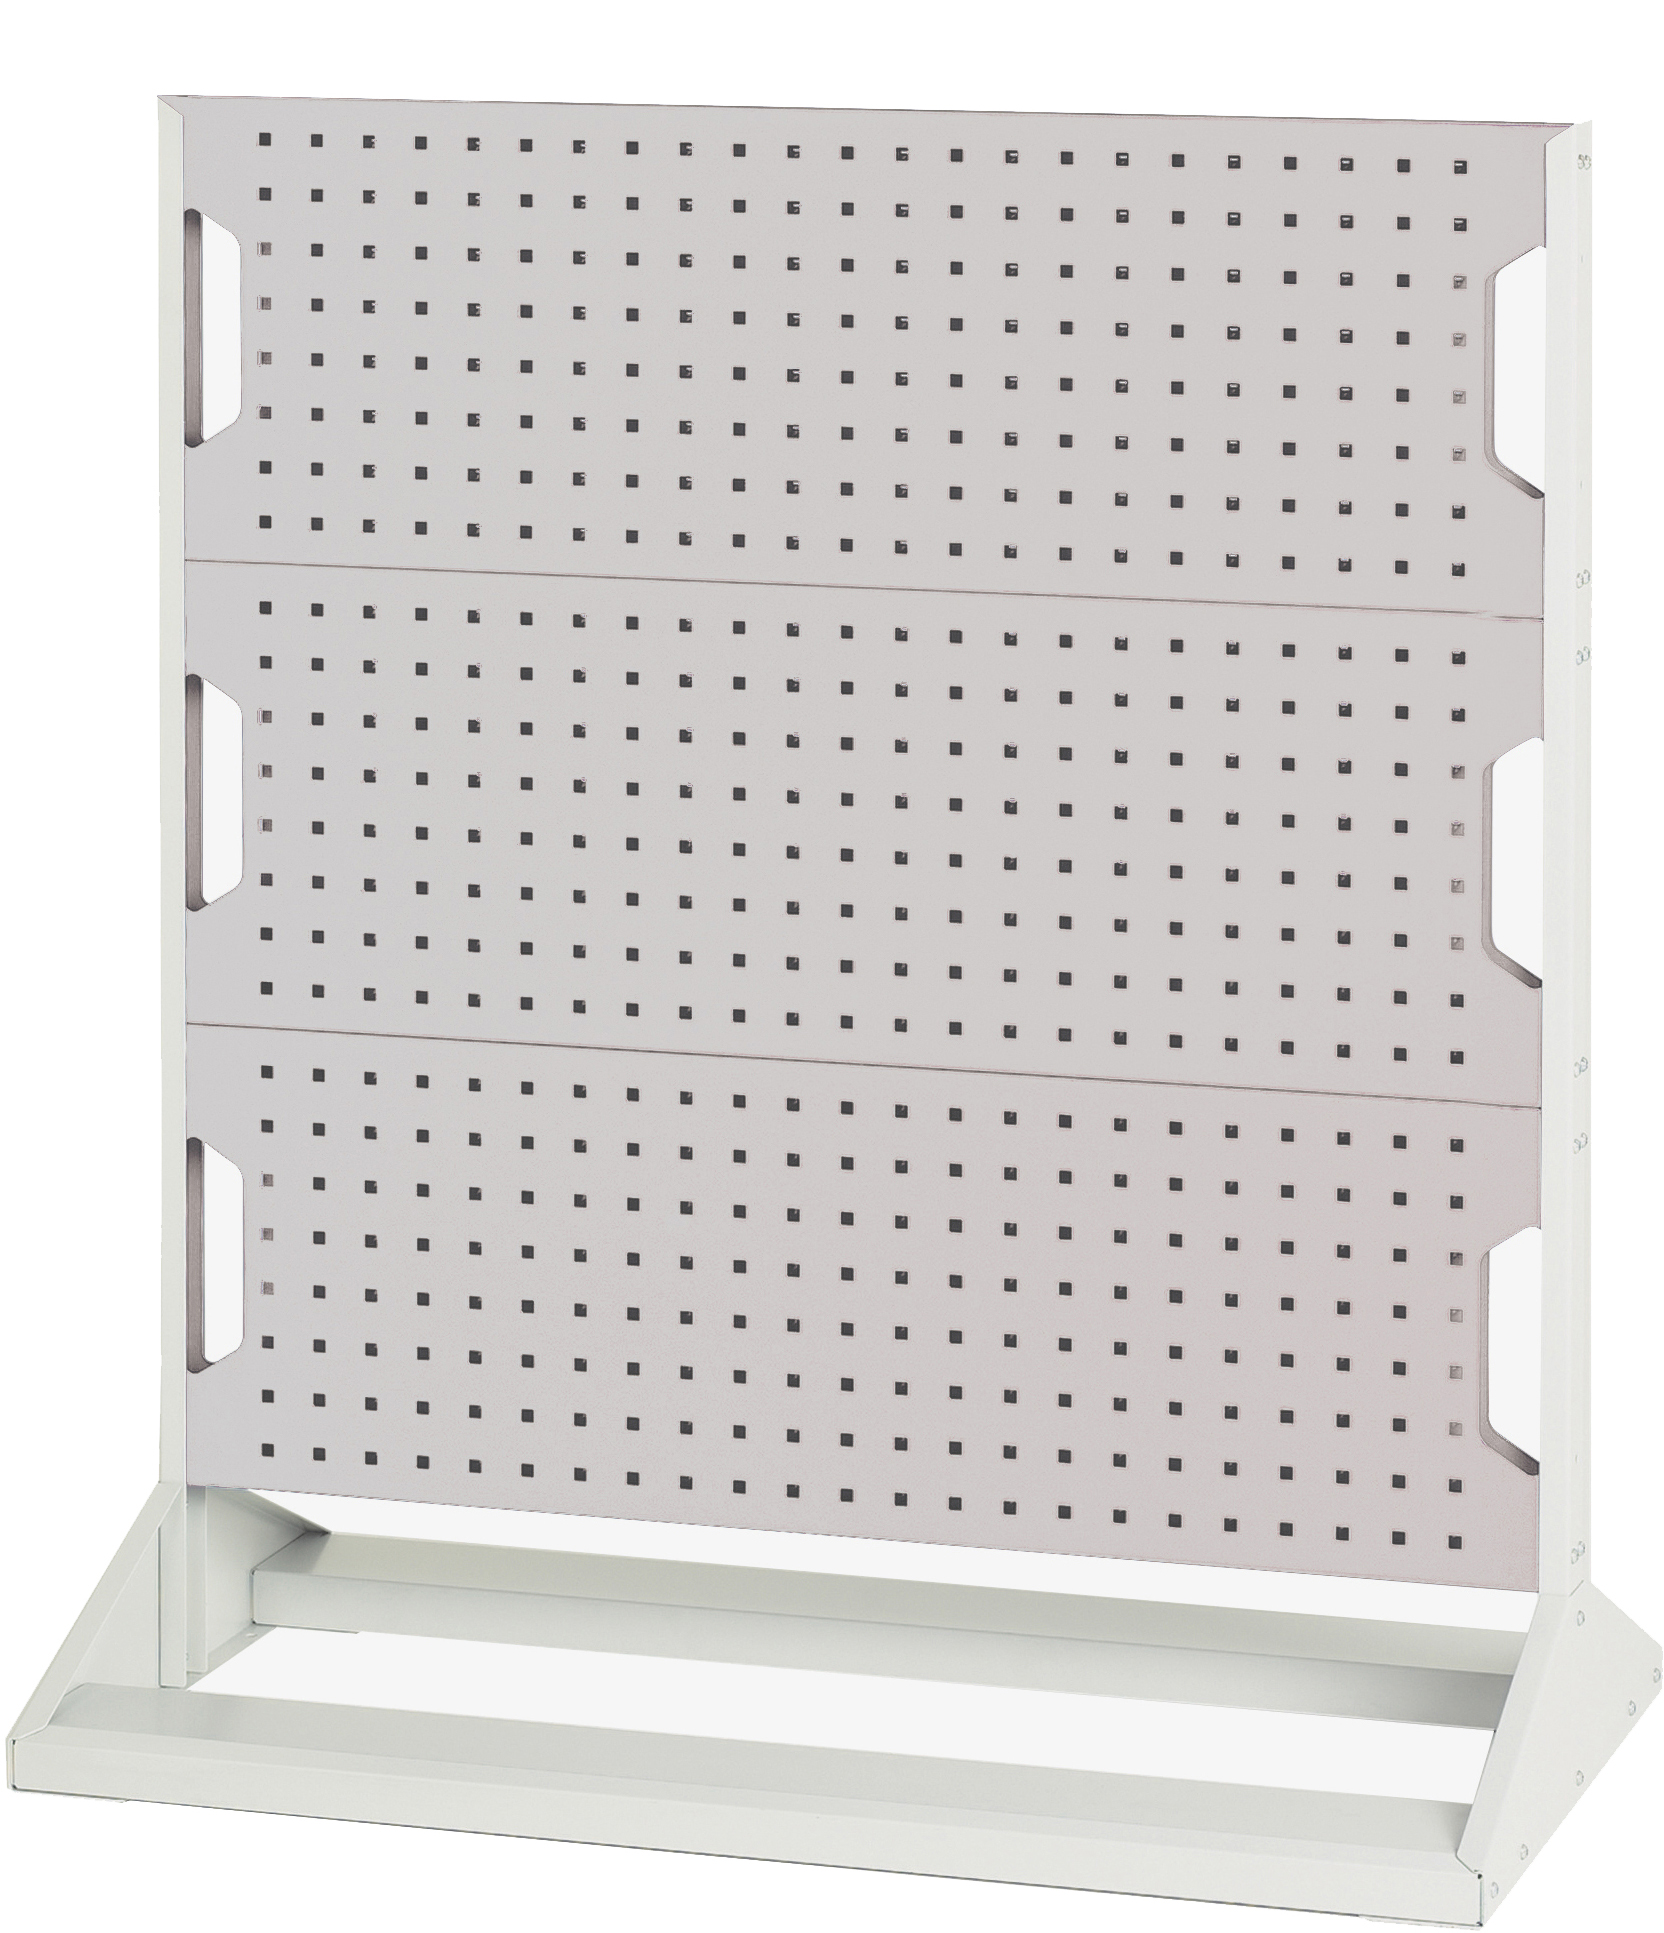 Bott Perfo Panel Rack (Single Sided) - 16917105.16V